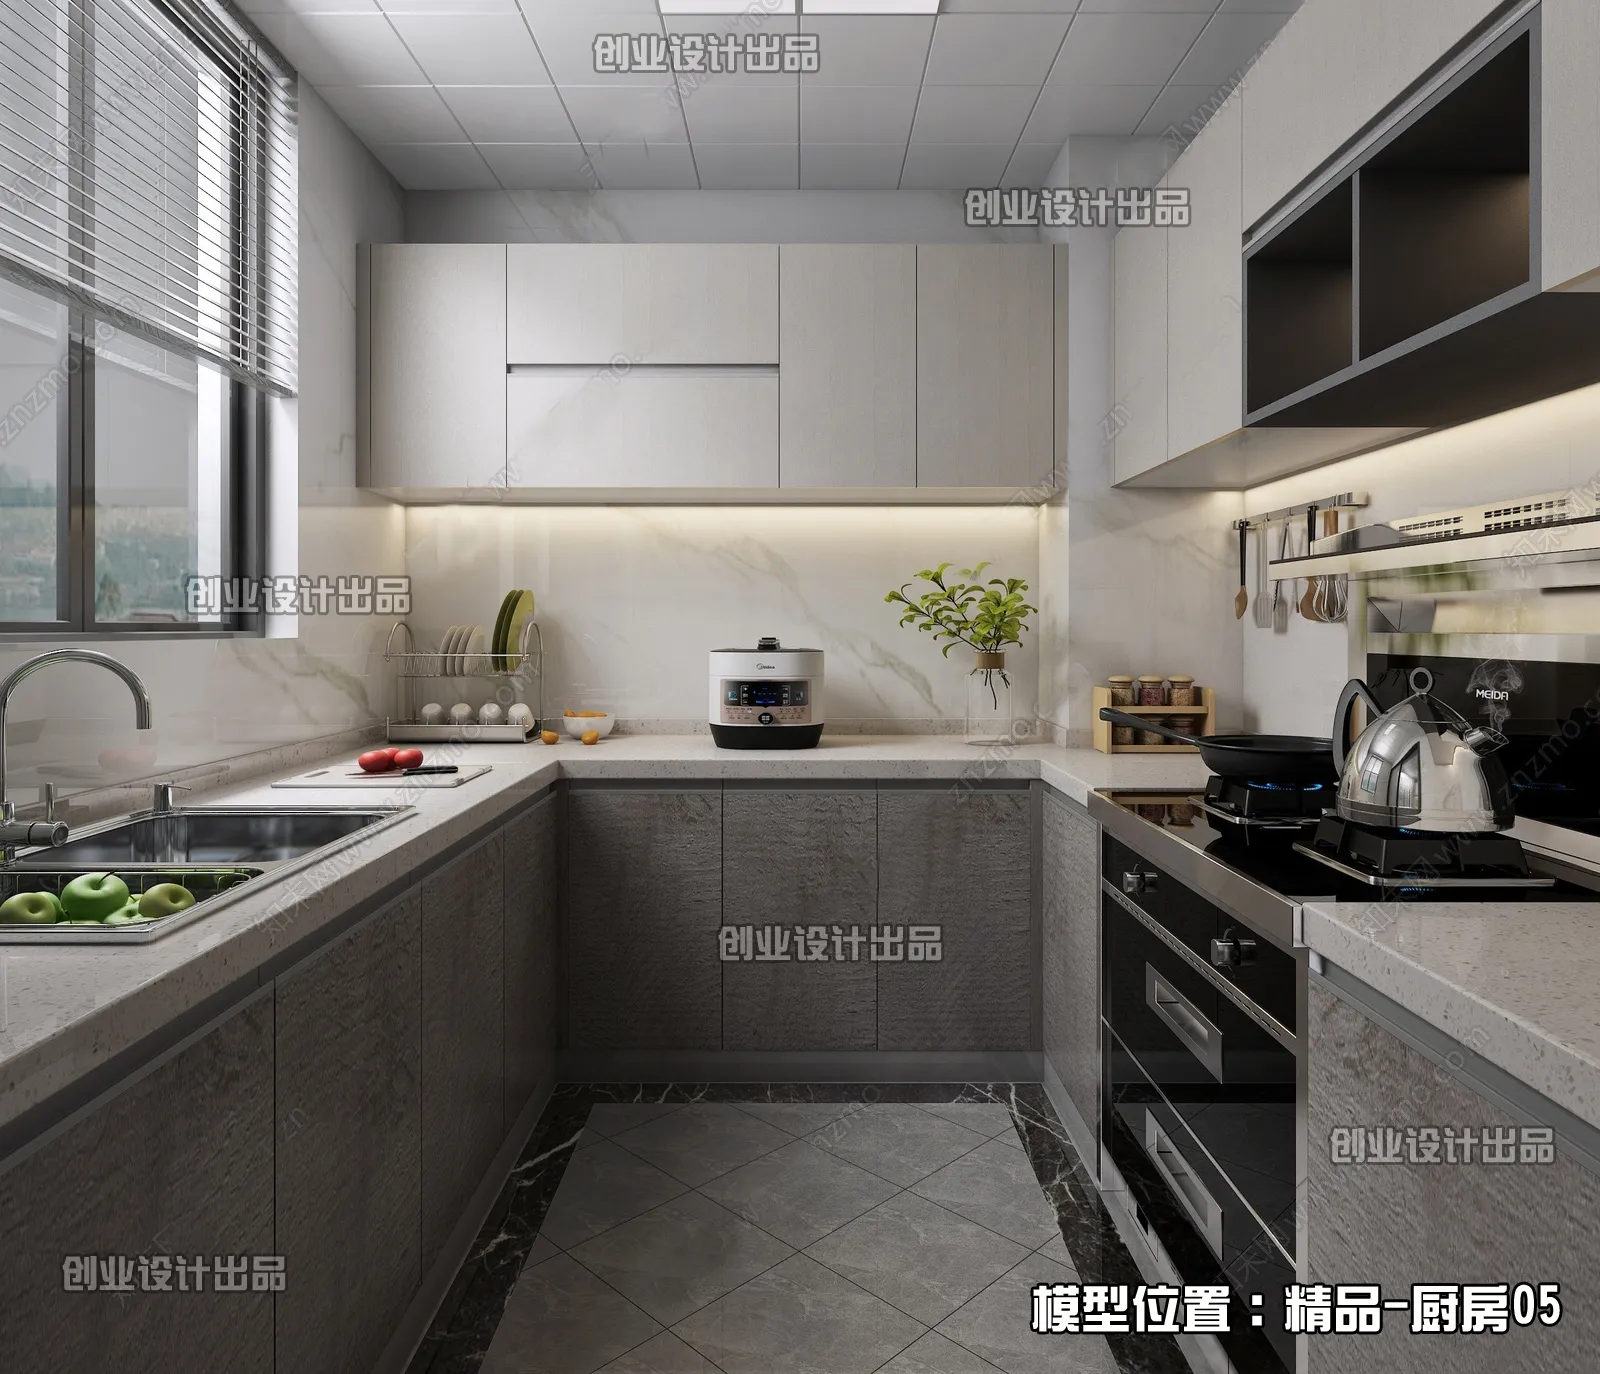 Kitchen – Modern Interior Design – 3D Models – 049